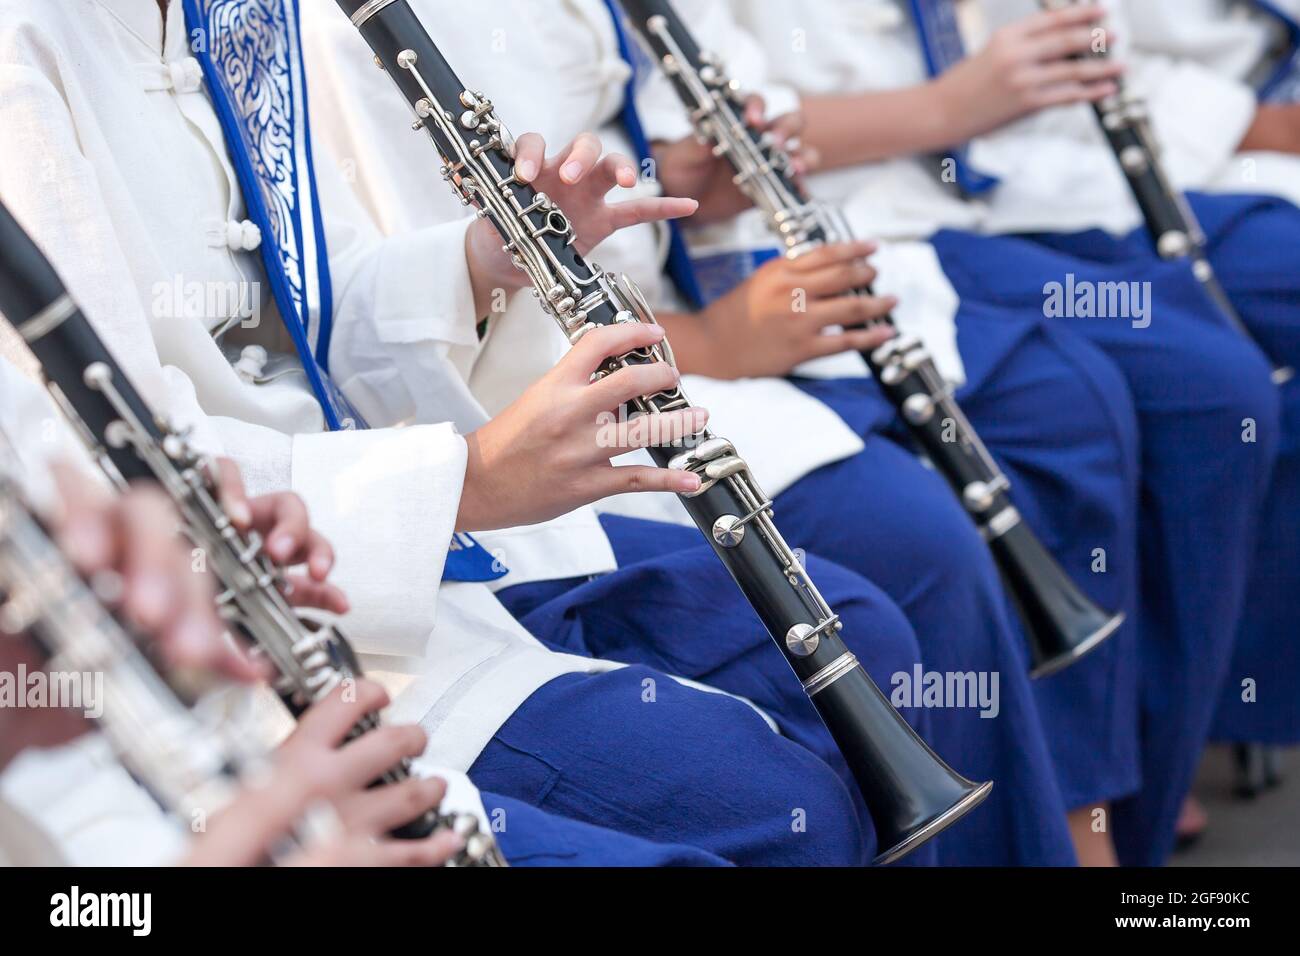 Un orchestre de jeunes thaïlandais en vêtements traditionnels du nord de la Thaïlande se produit dans un festival de musique traditionnelle. Gros plan de jeunes musiciens jouant à la main clarinette. Banque D'Images